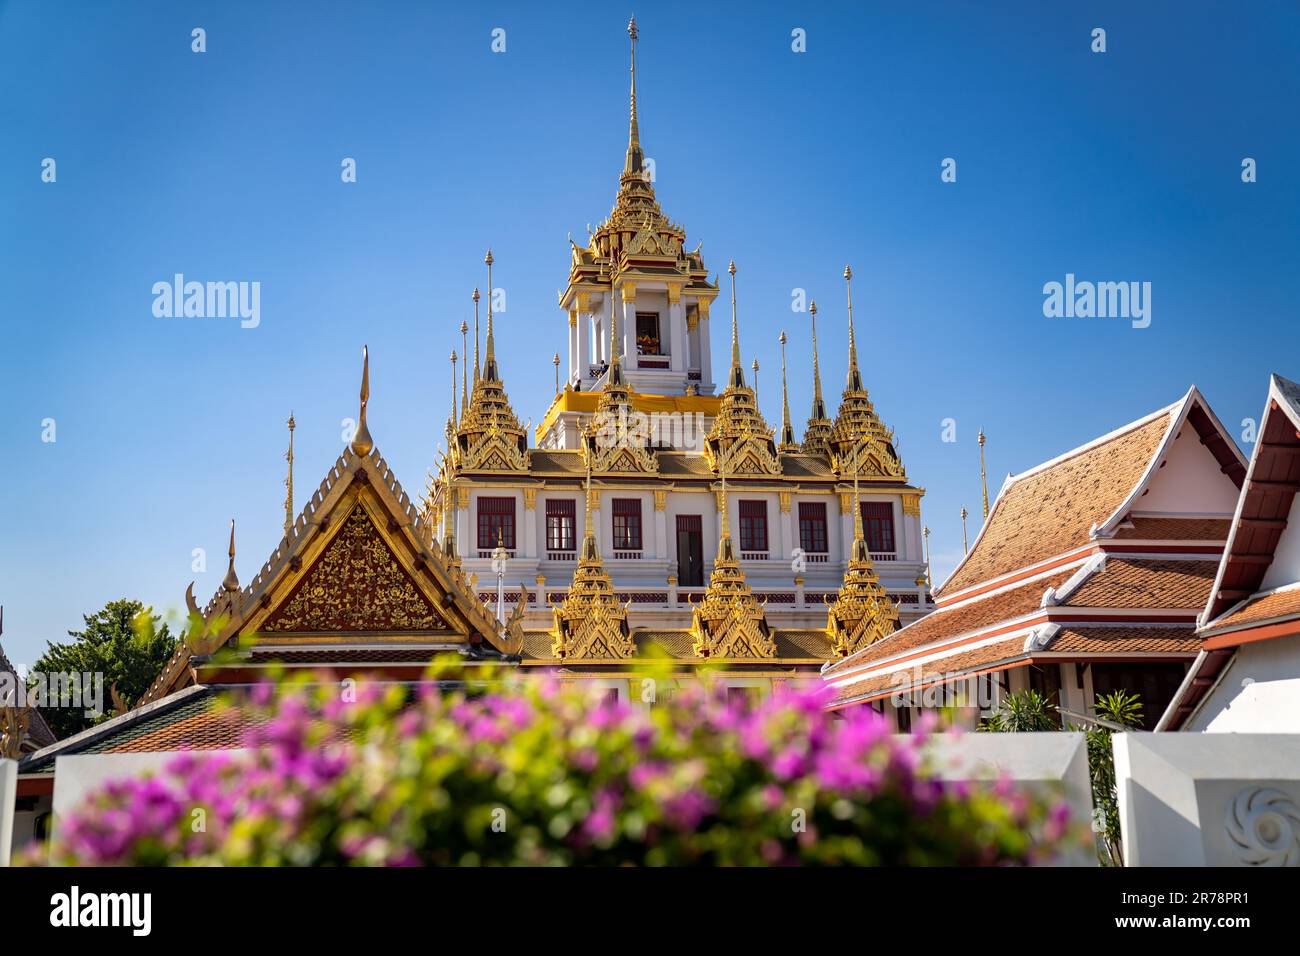 Wat Ratchanatdaram Worawihan, complexe de temples bouddhistes, qui abrite un Loha Prasat, connu sous le nom de château de métal pour ses 37 flèches de fer à Bangkok, en Thaïlande. Banque D'Images